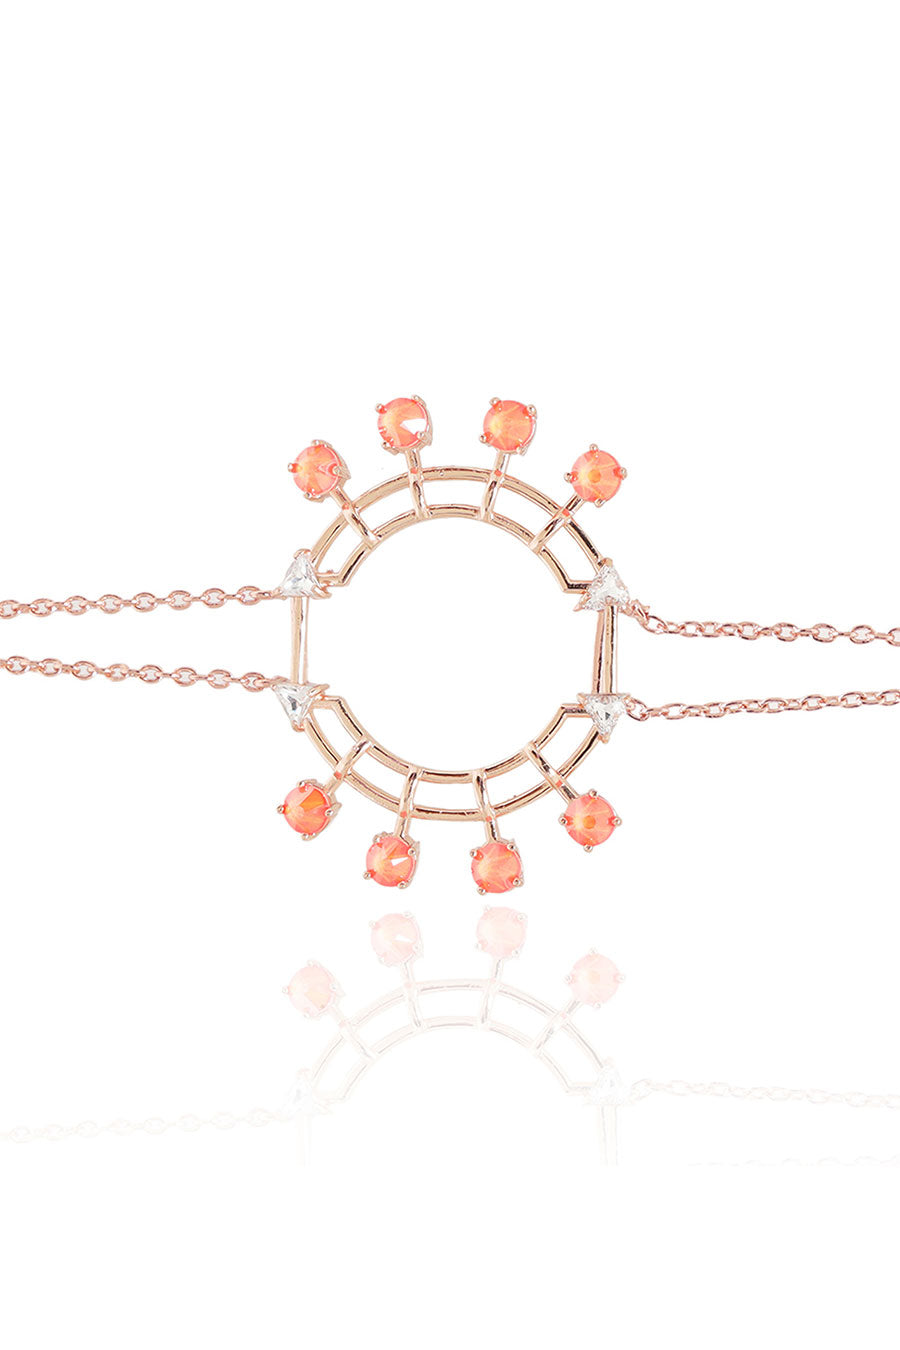 Colored Popsicles - Orange Swarovski Tennis Bracelet